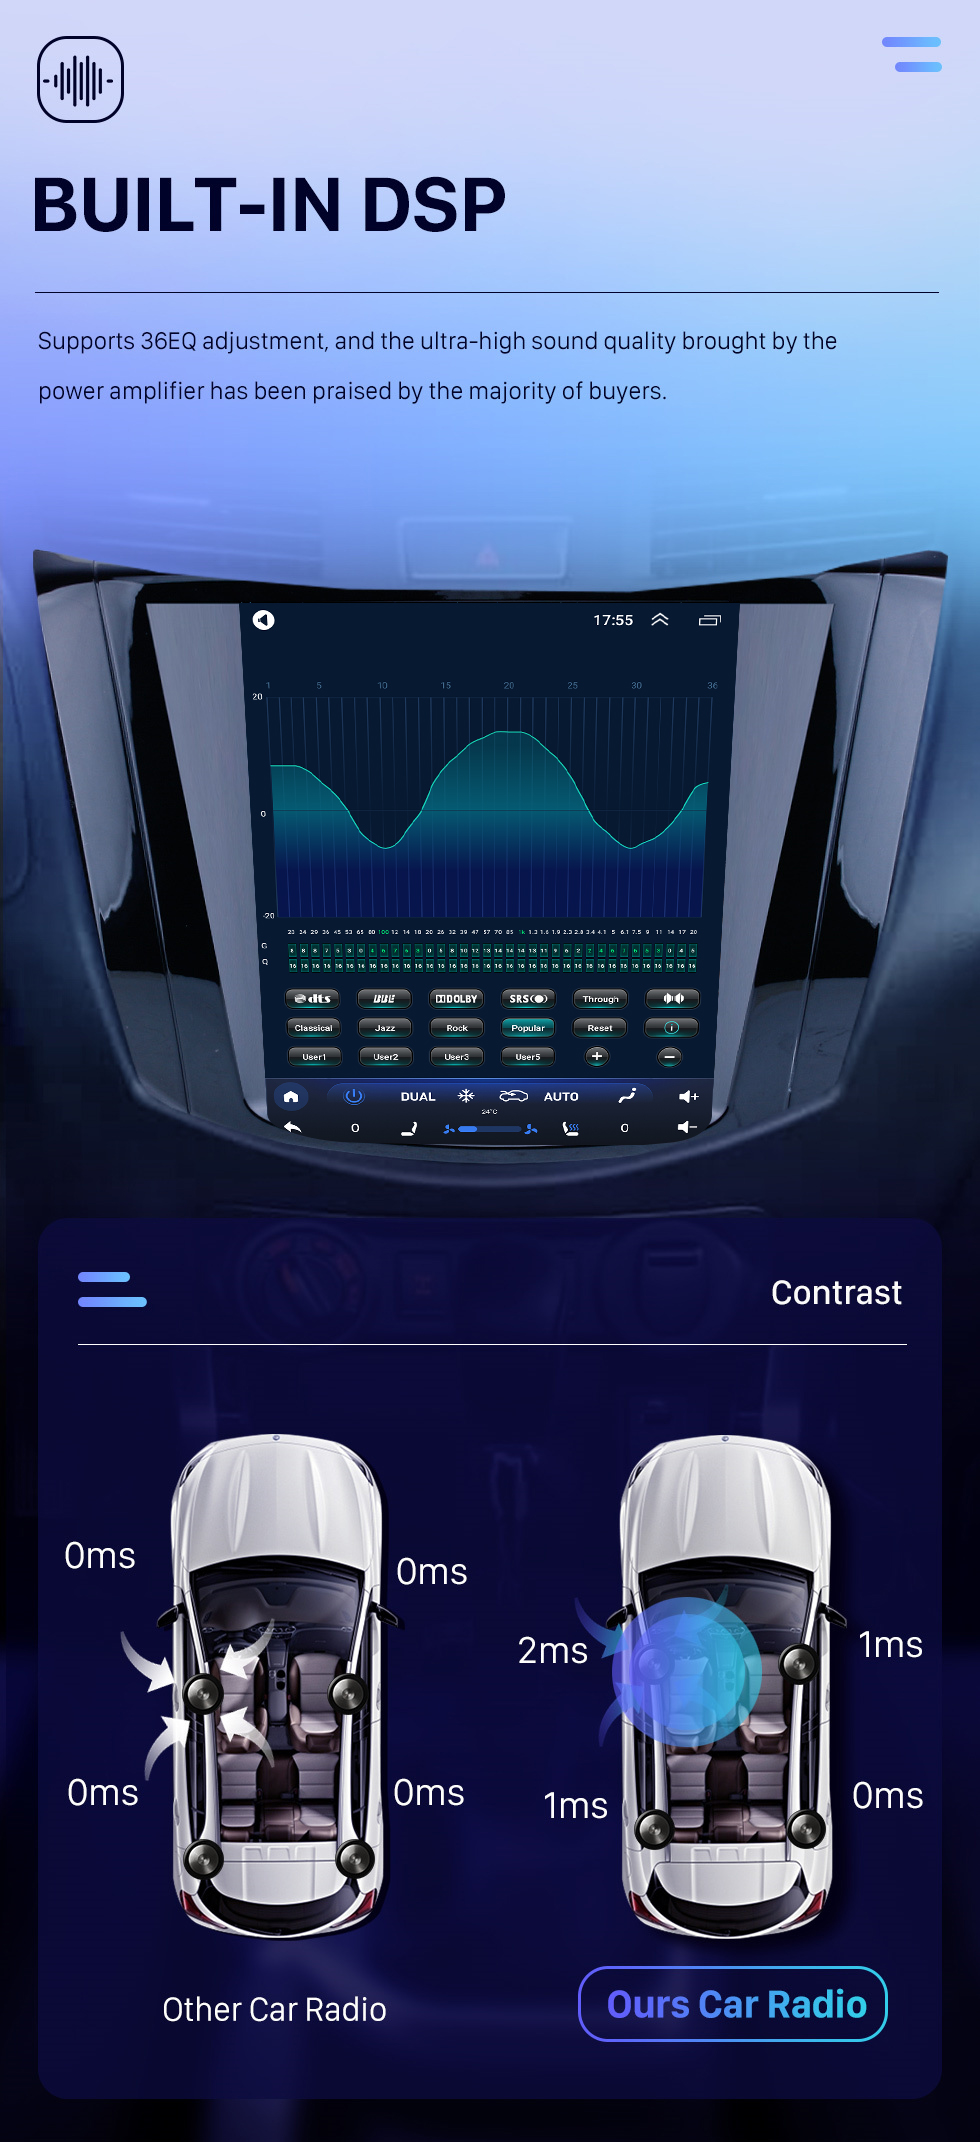 Seicane Сенсорный экран OEM HD 9,7-дюймовый Android 10.0 Радио для Nissan NAVARA Terra Auto A / C 2018 года с системой GPS Navi Зеркальная связь Музыка Bluetooth Поддержка WIFI OBD2 DVR SWC